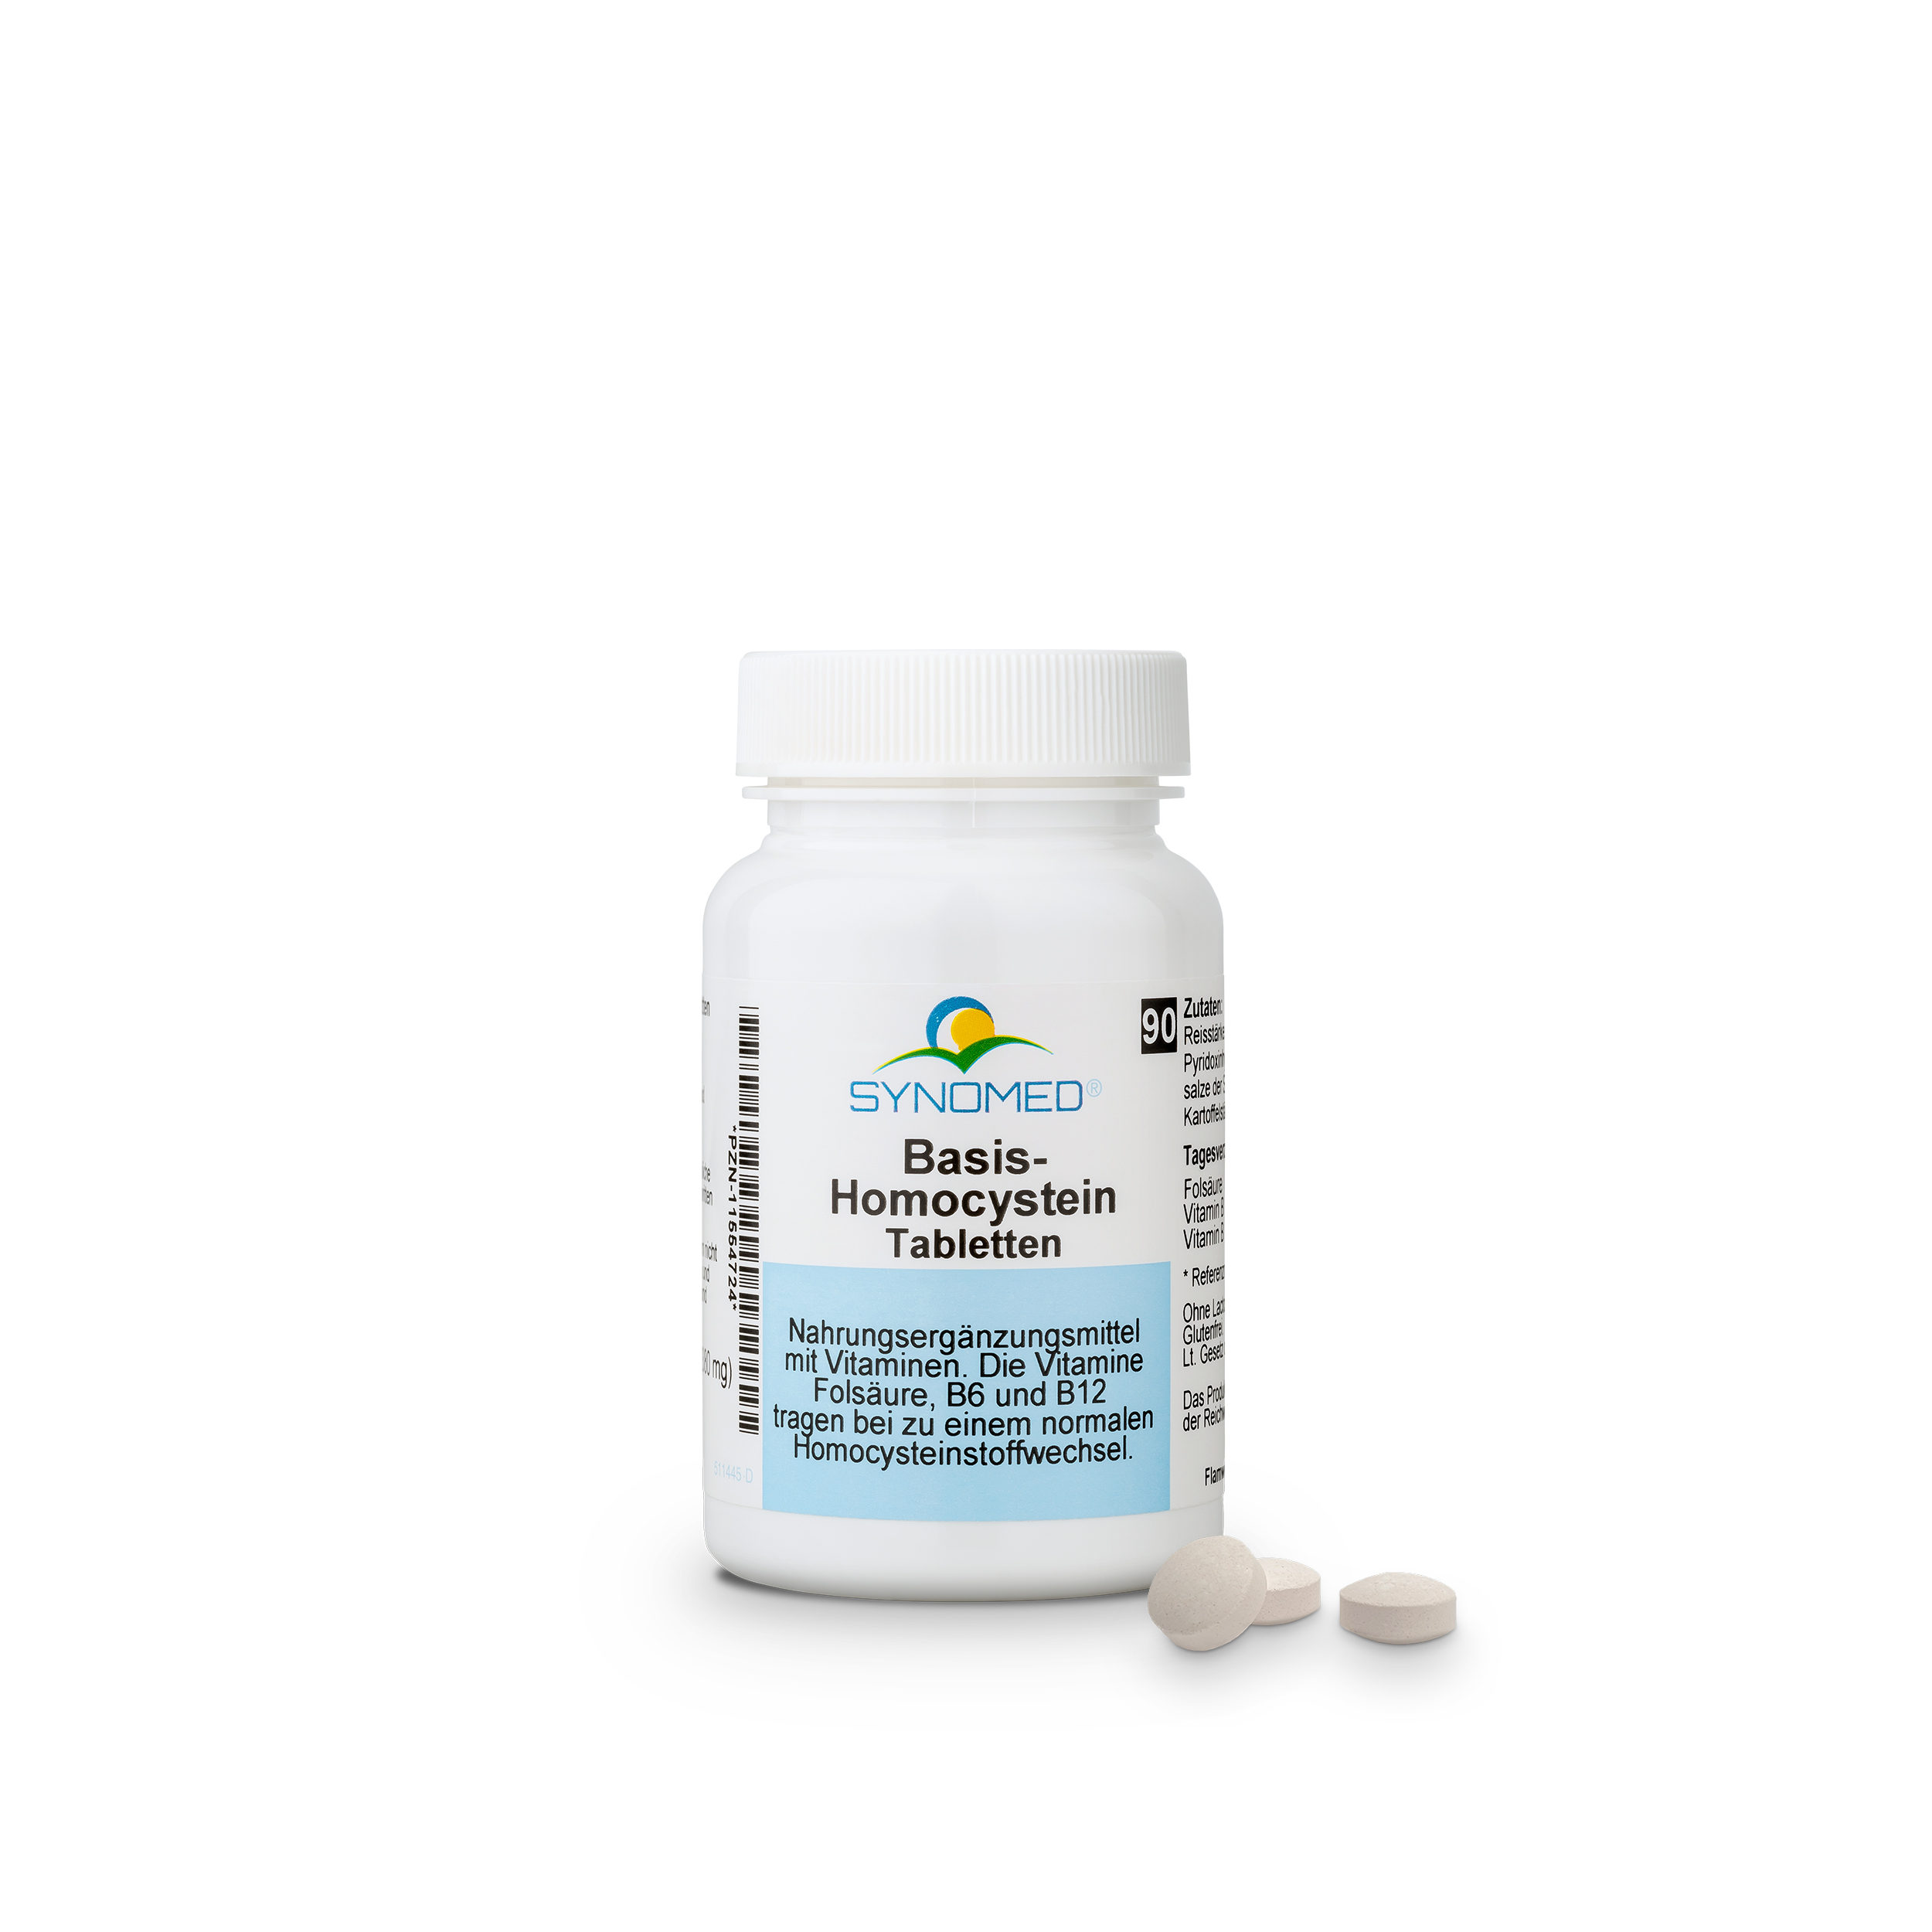 Basis-Homocystein Tabletten